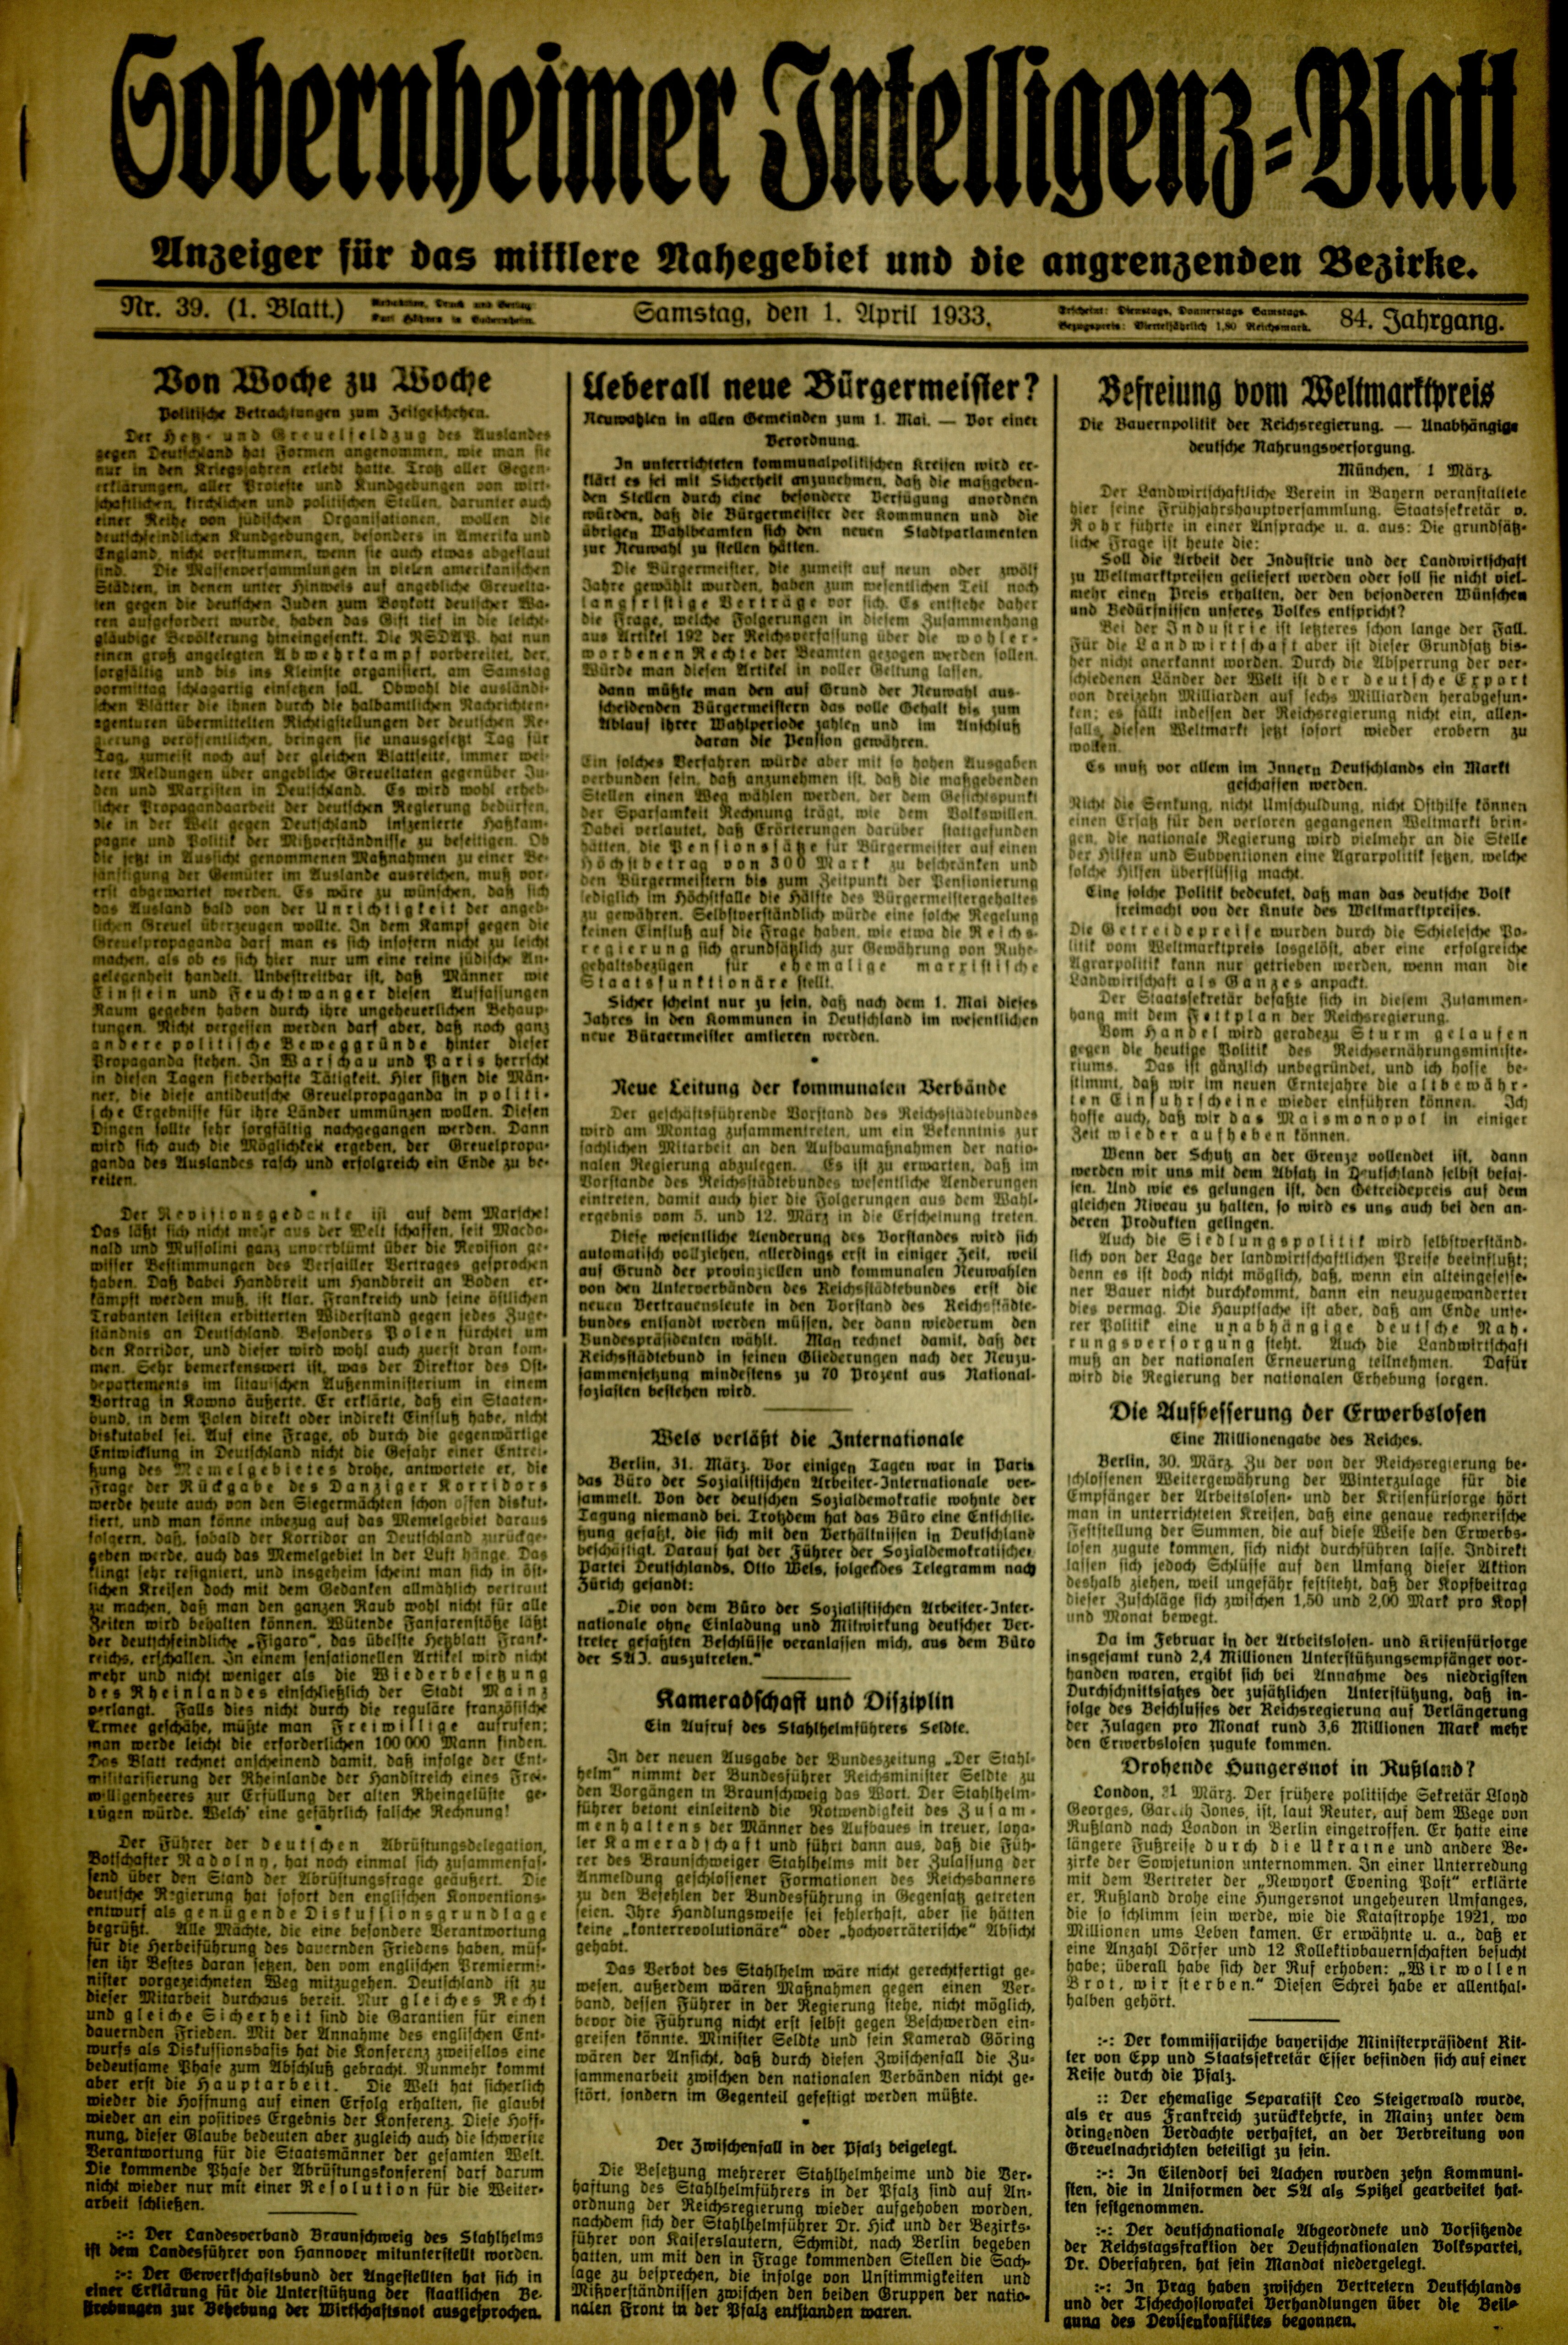 Zeitung: Sobernheimer Intelligenzblatt; April 1932, Jg. 84 Nr. 39 (Heimatmuseum Bad Sobernheim CC BY-NC-SA)